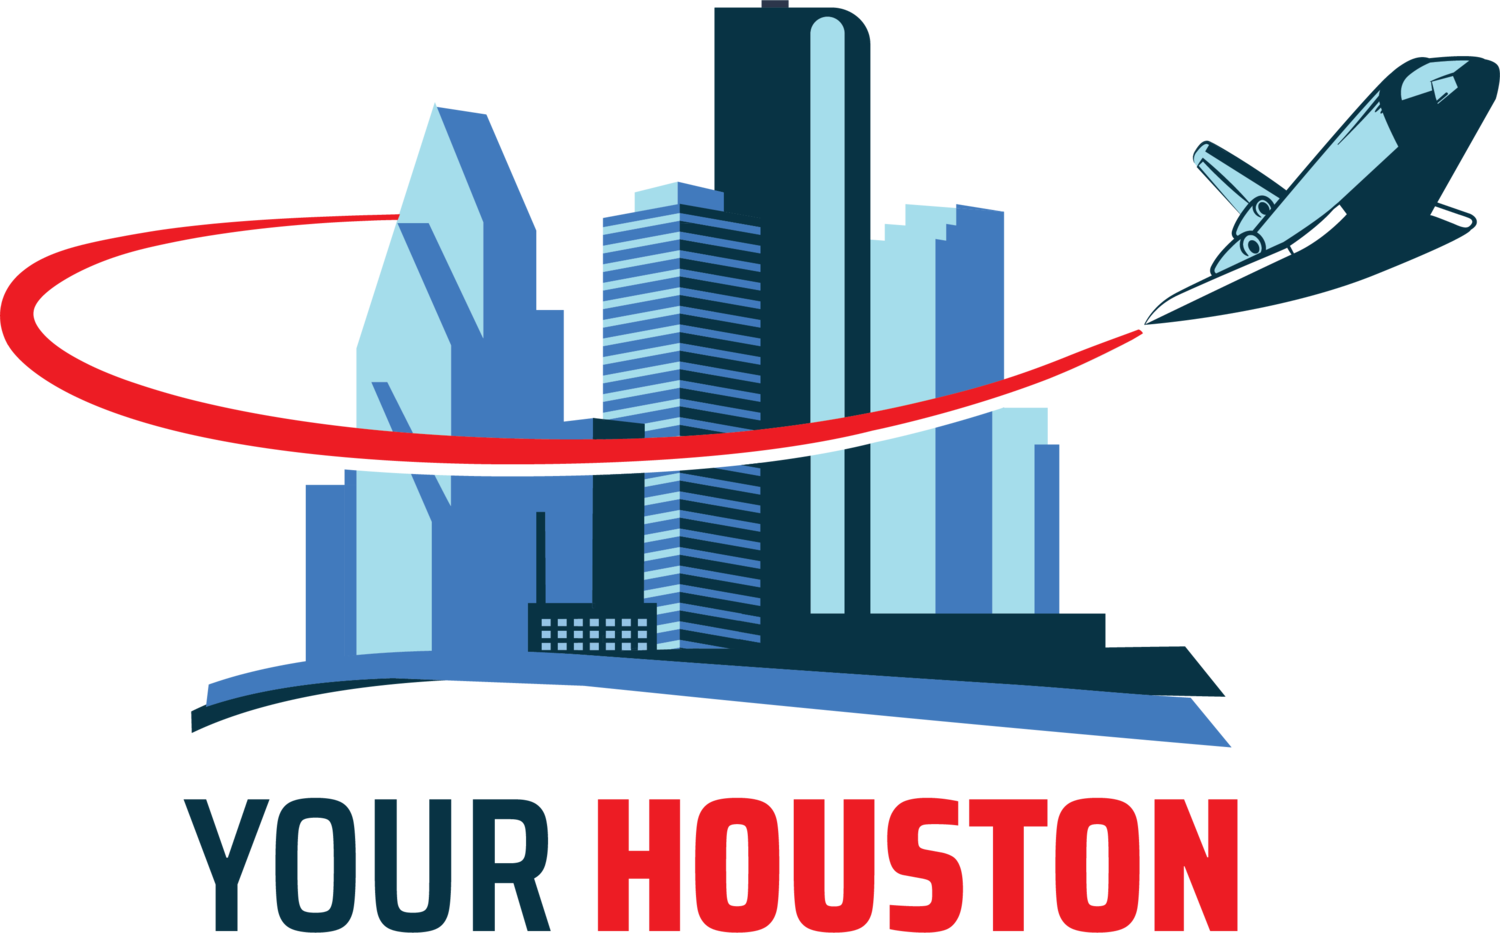 Your Houston